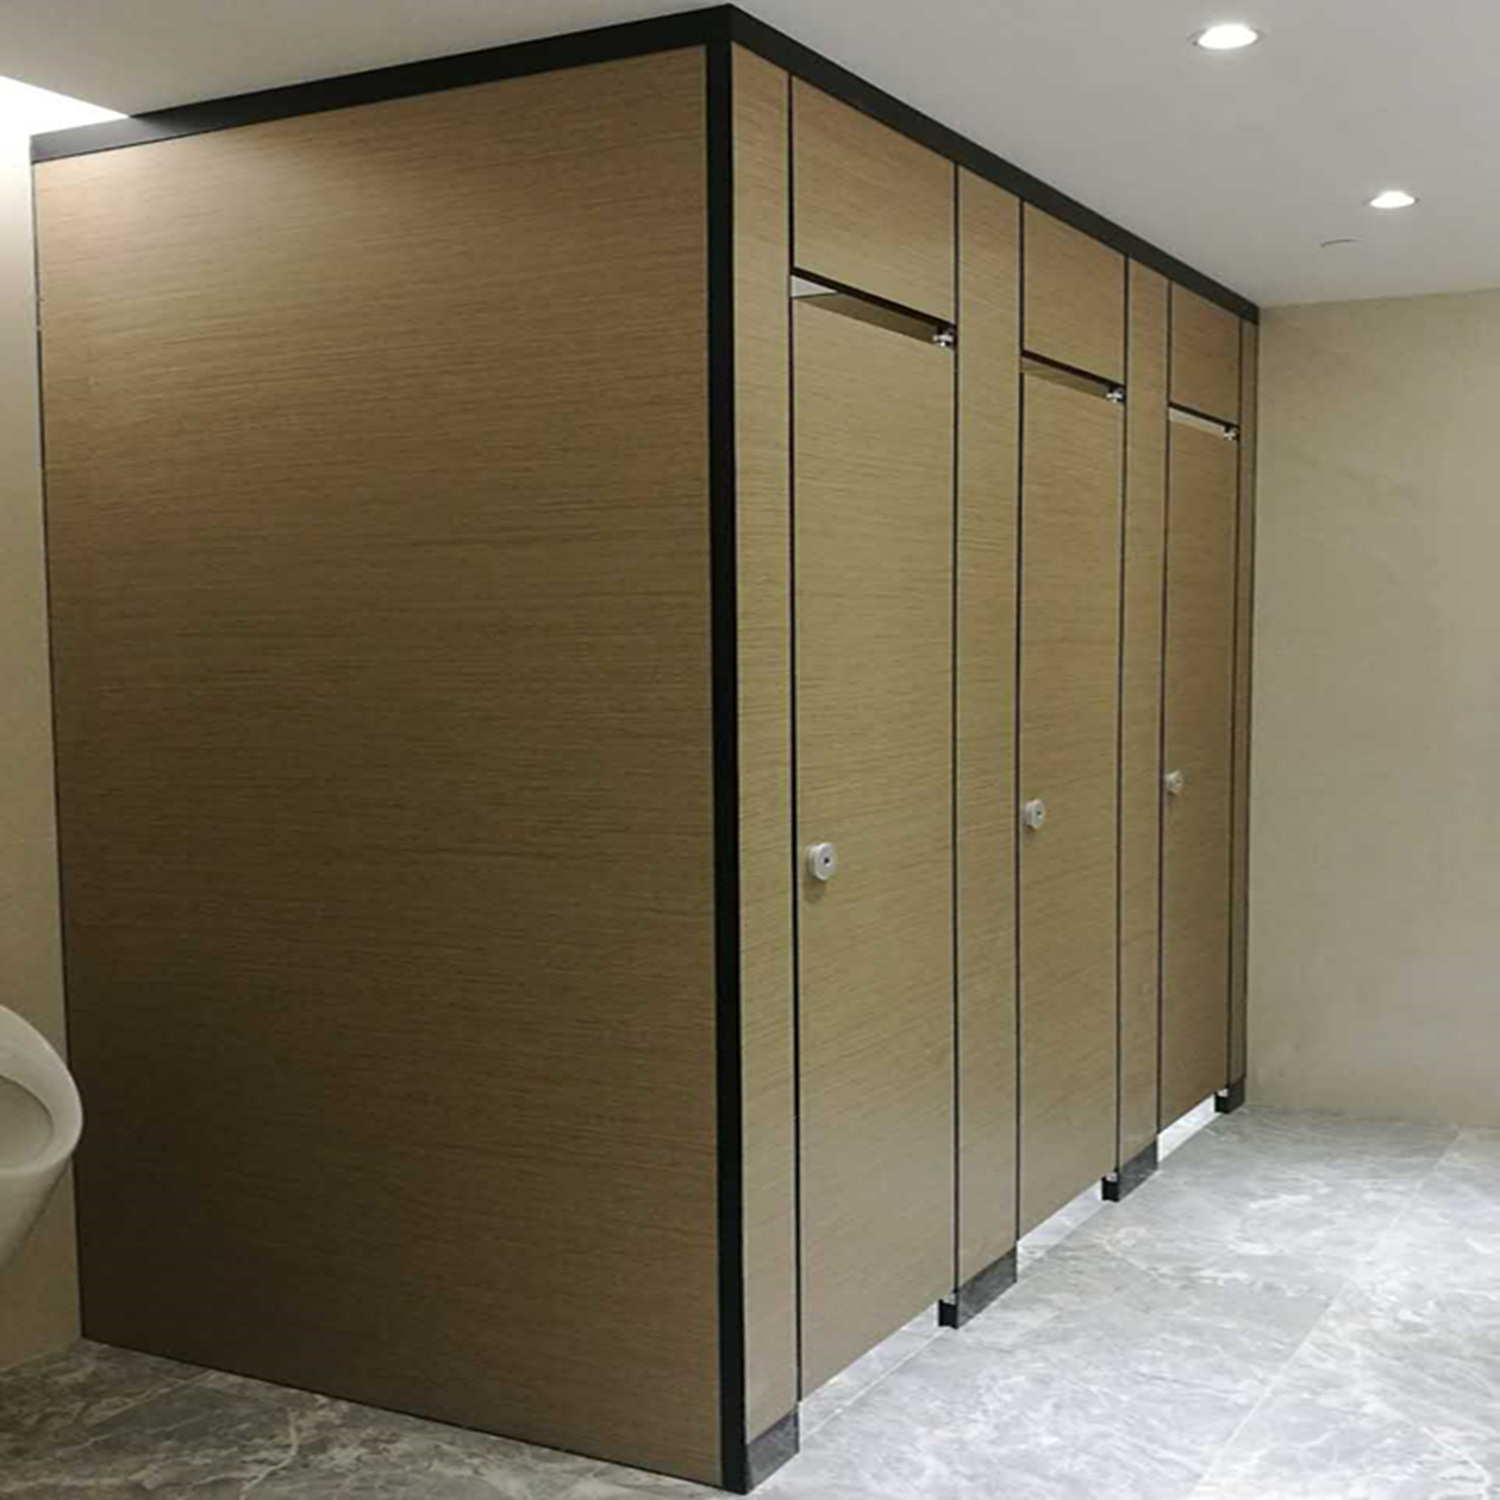 塑钢PVC防水板卫生间隔断 - 深圳市鑫亿装饰材料有限公司